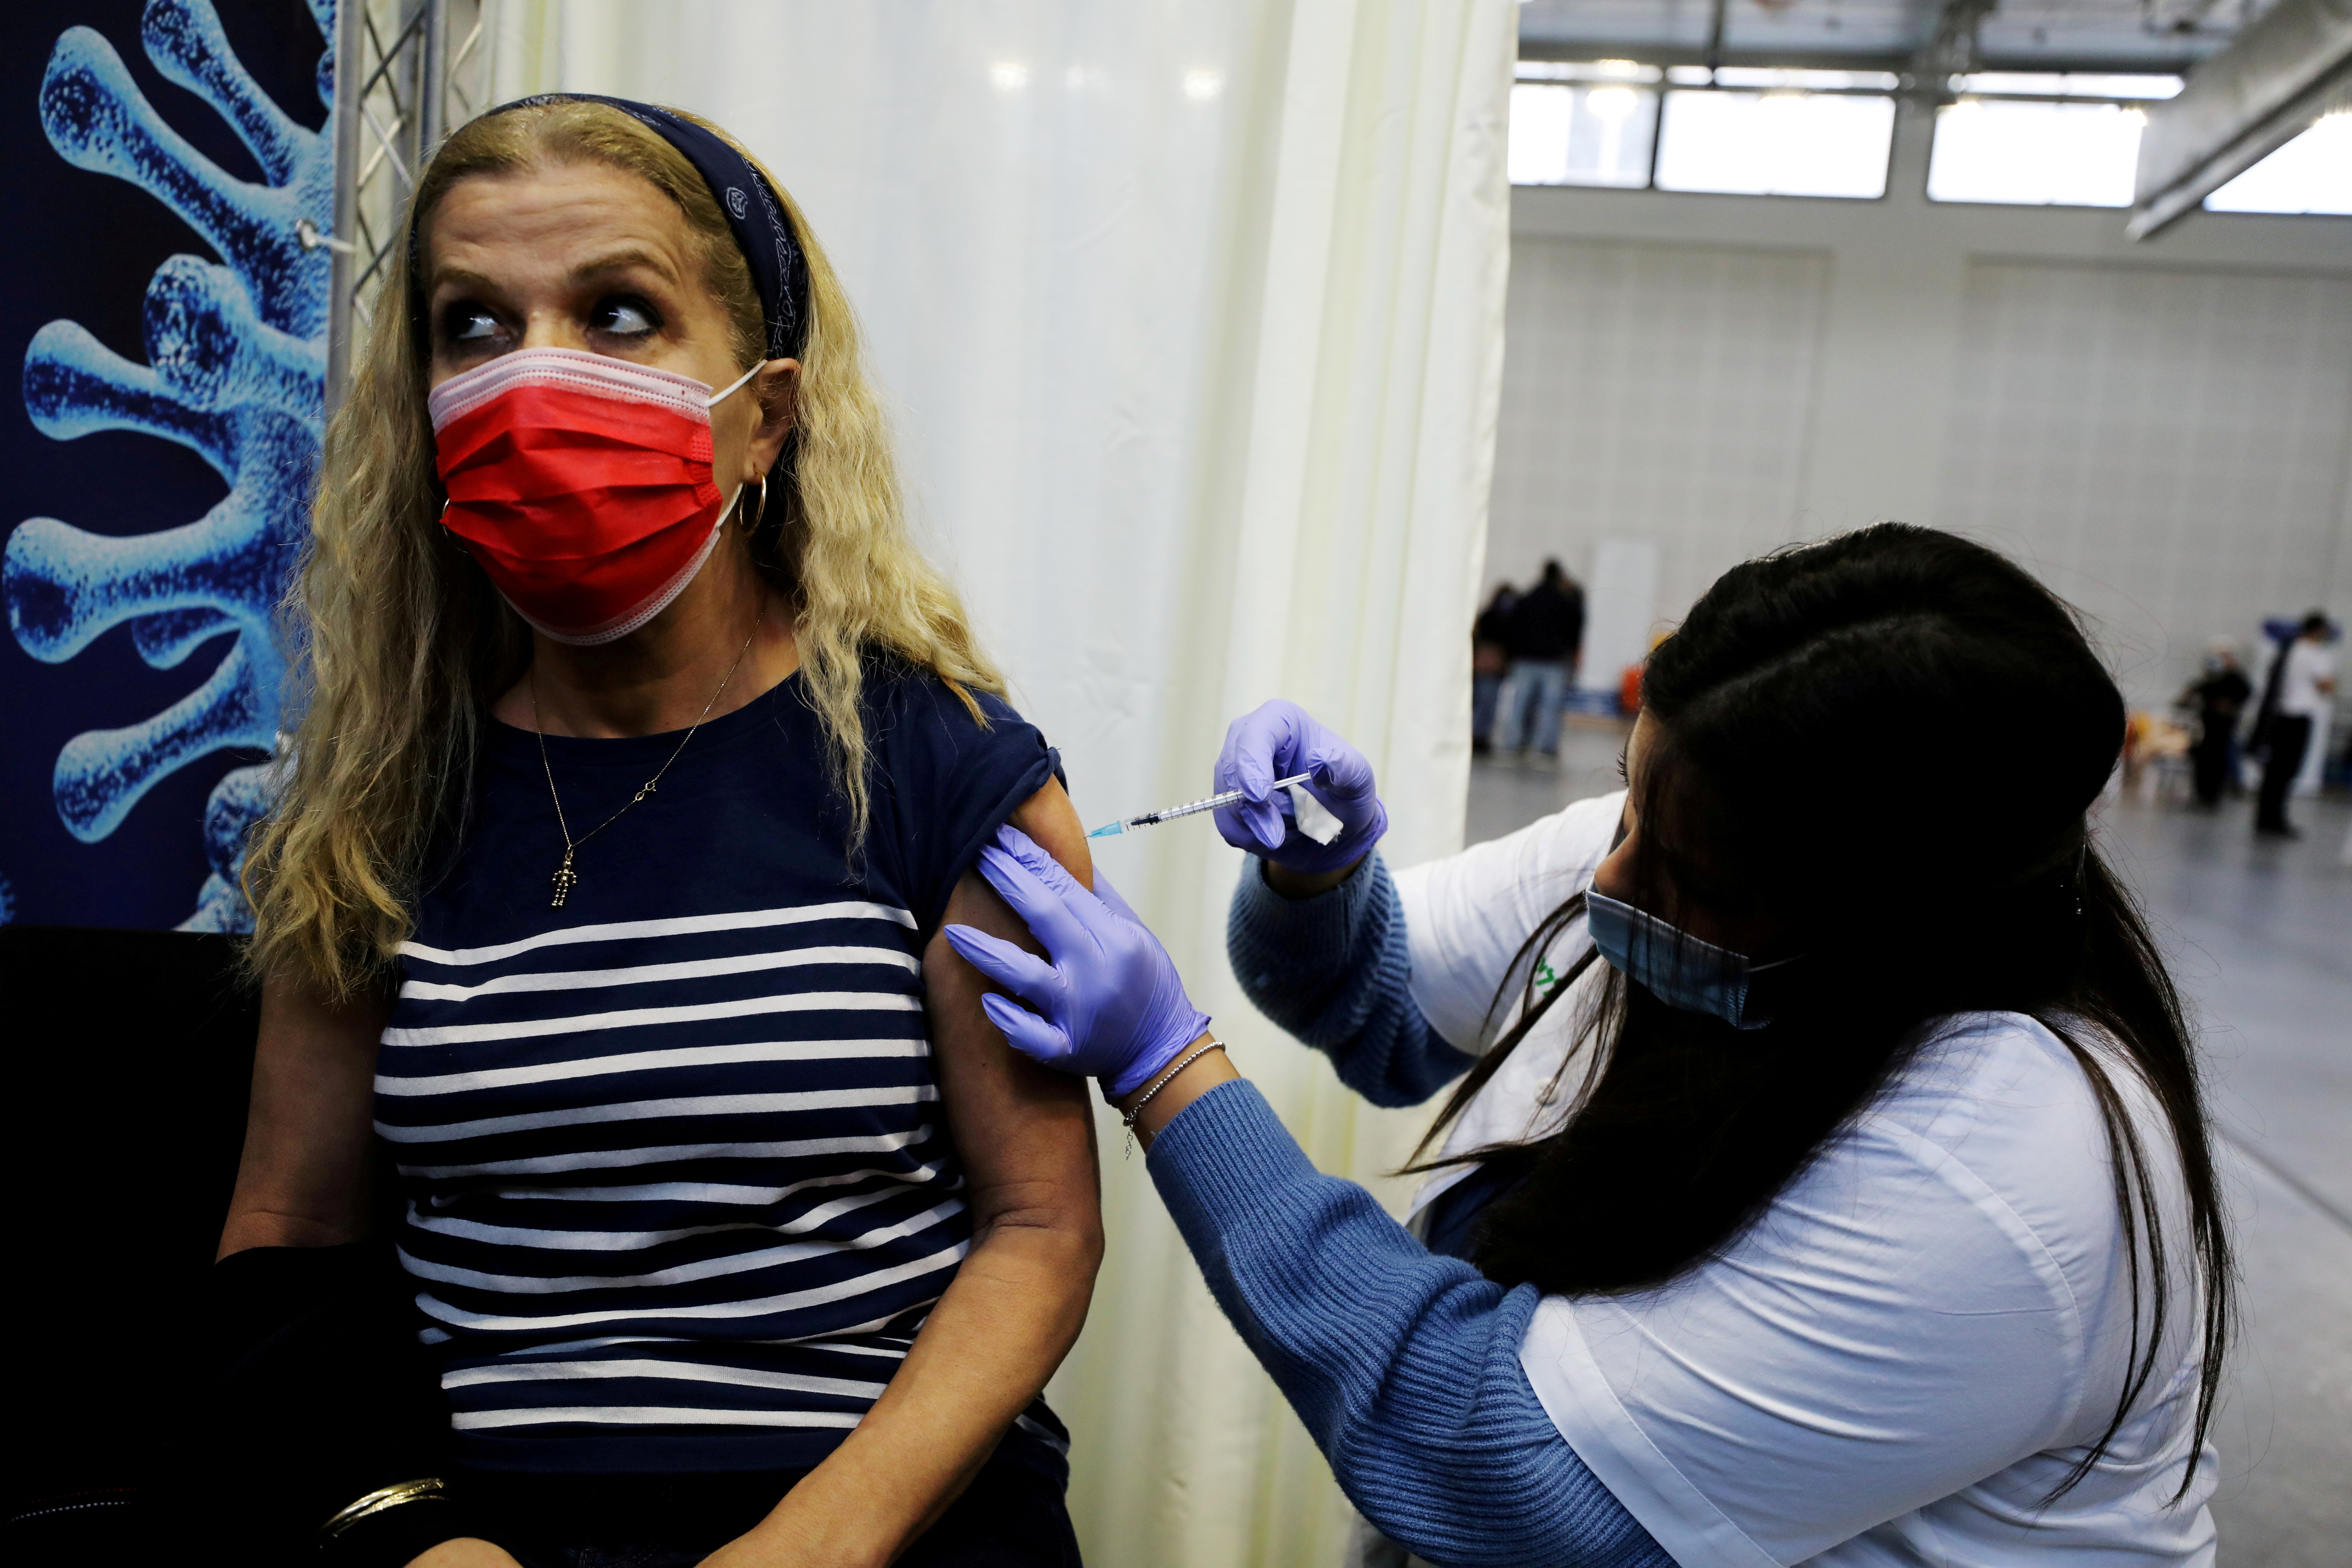 FOTO DE ARCHIVO: Una mujer recibe una vacuna contra la enfermedad del coronavirus (COVID-19) en un centro temporal de la organización de mantenimiento de la salud (HMO) Clalit, en una cancha de baloncesto en Petah Tikva, Israel, el 28 de enero de 2021. REUTERS / Ammar Awad